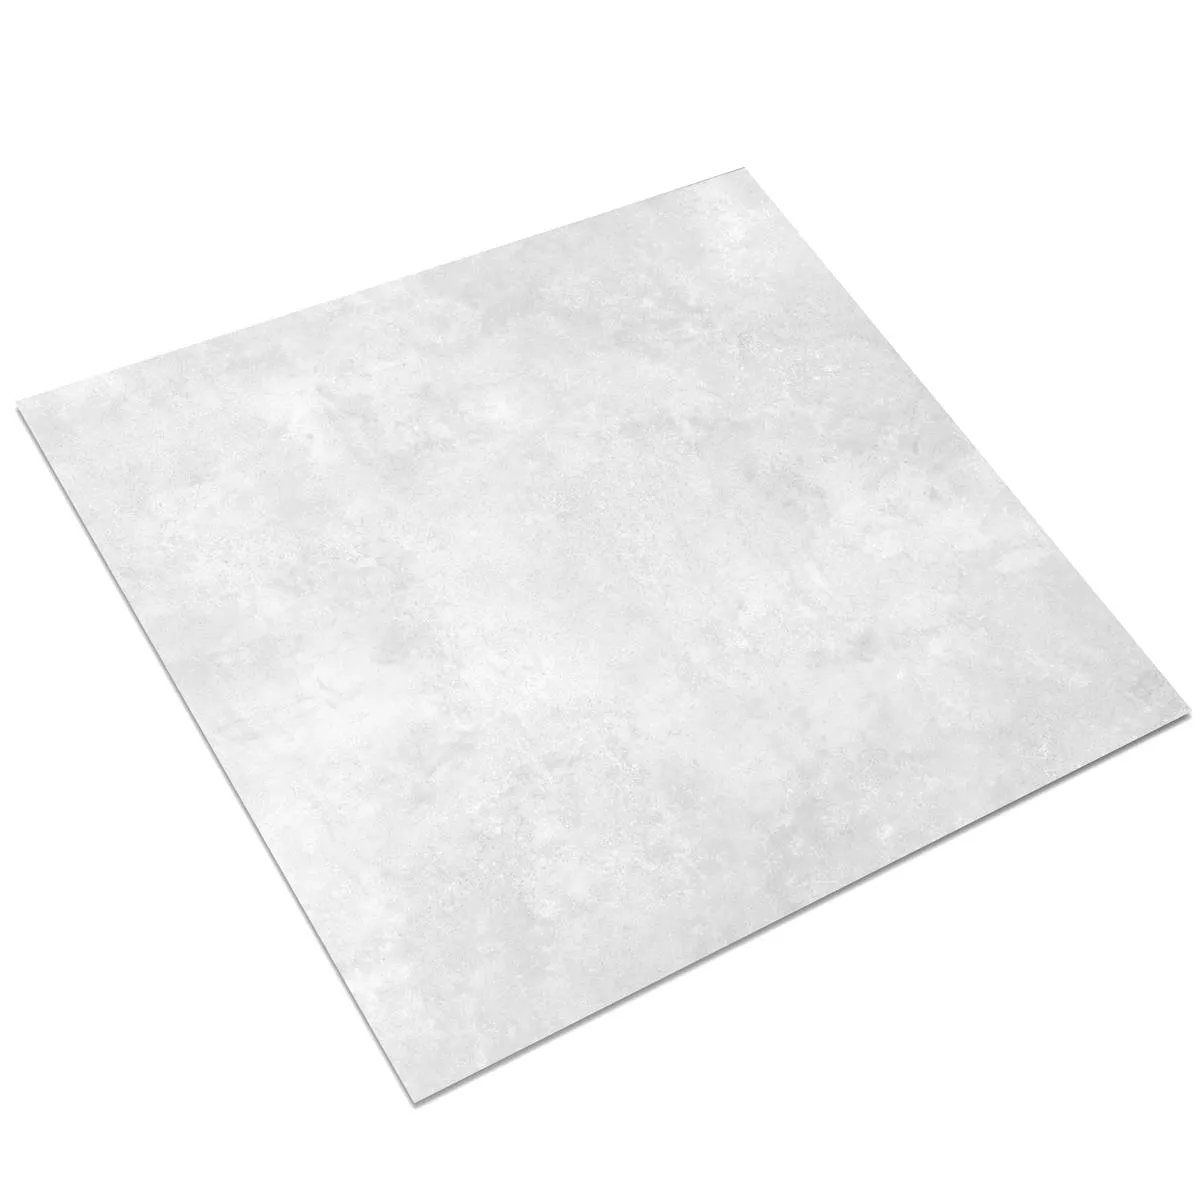 Πρότυπο Πλακάκι Δαπέδου Illusion Μεταλλική Εμφάνιση Lappato Ασπρο 60x60cm